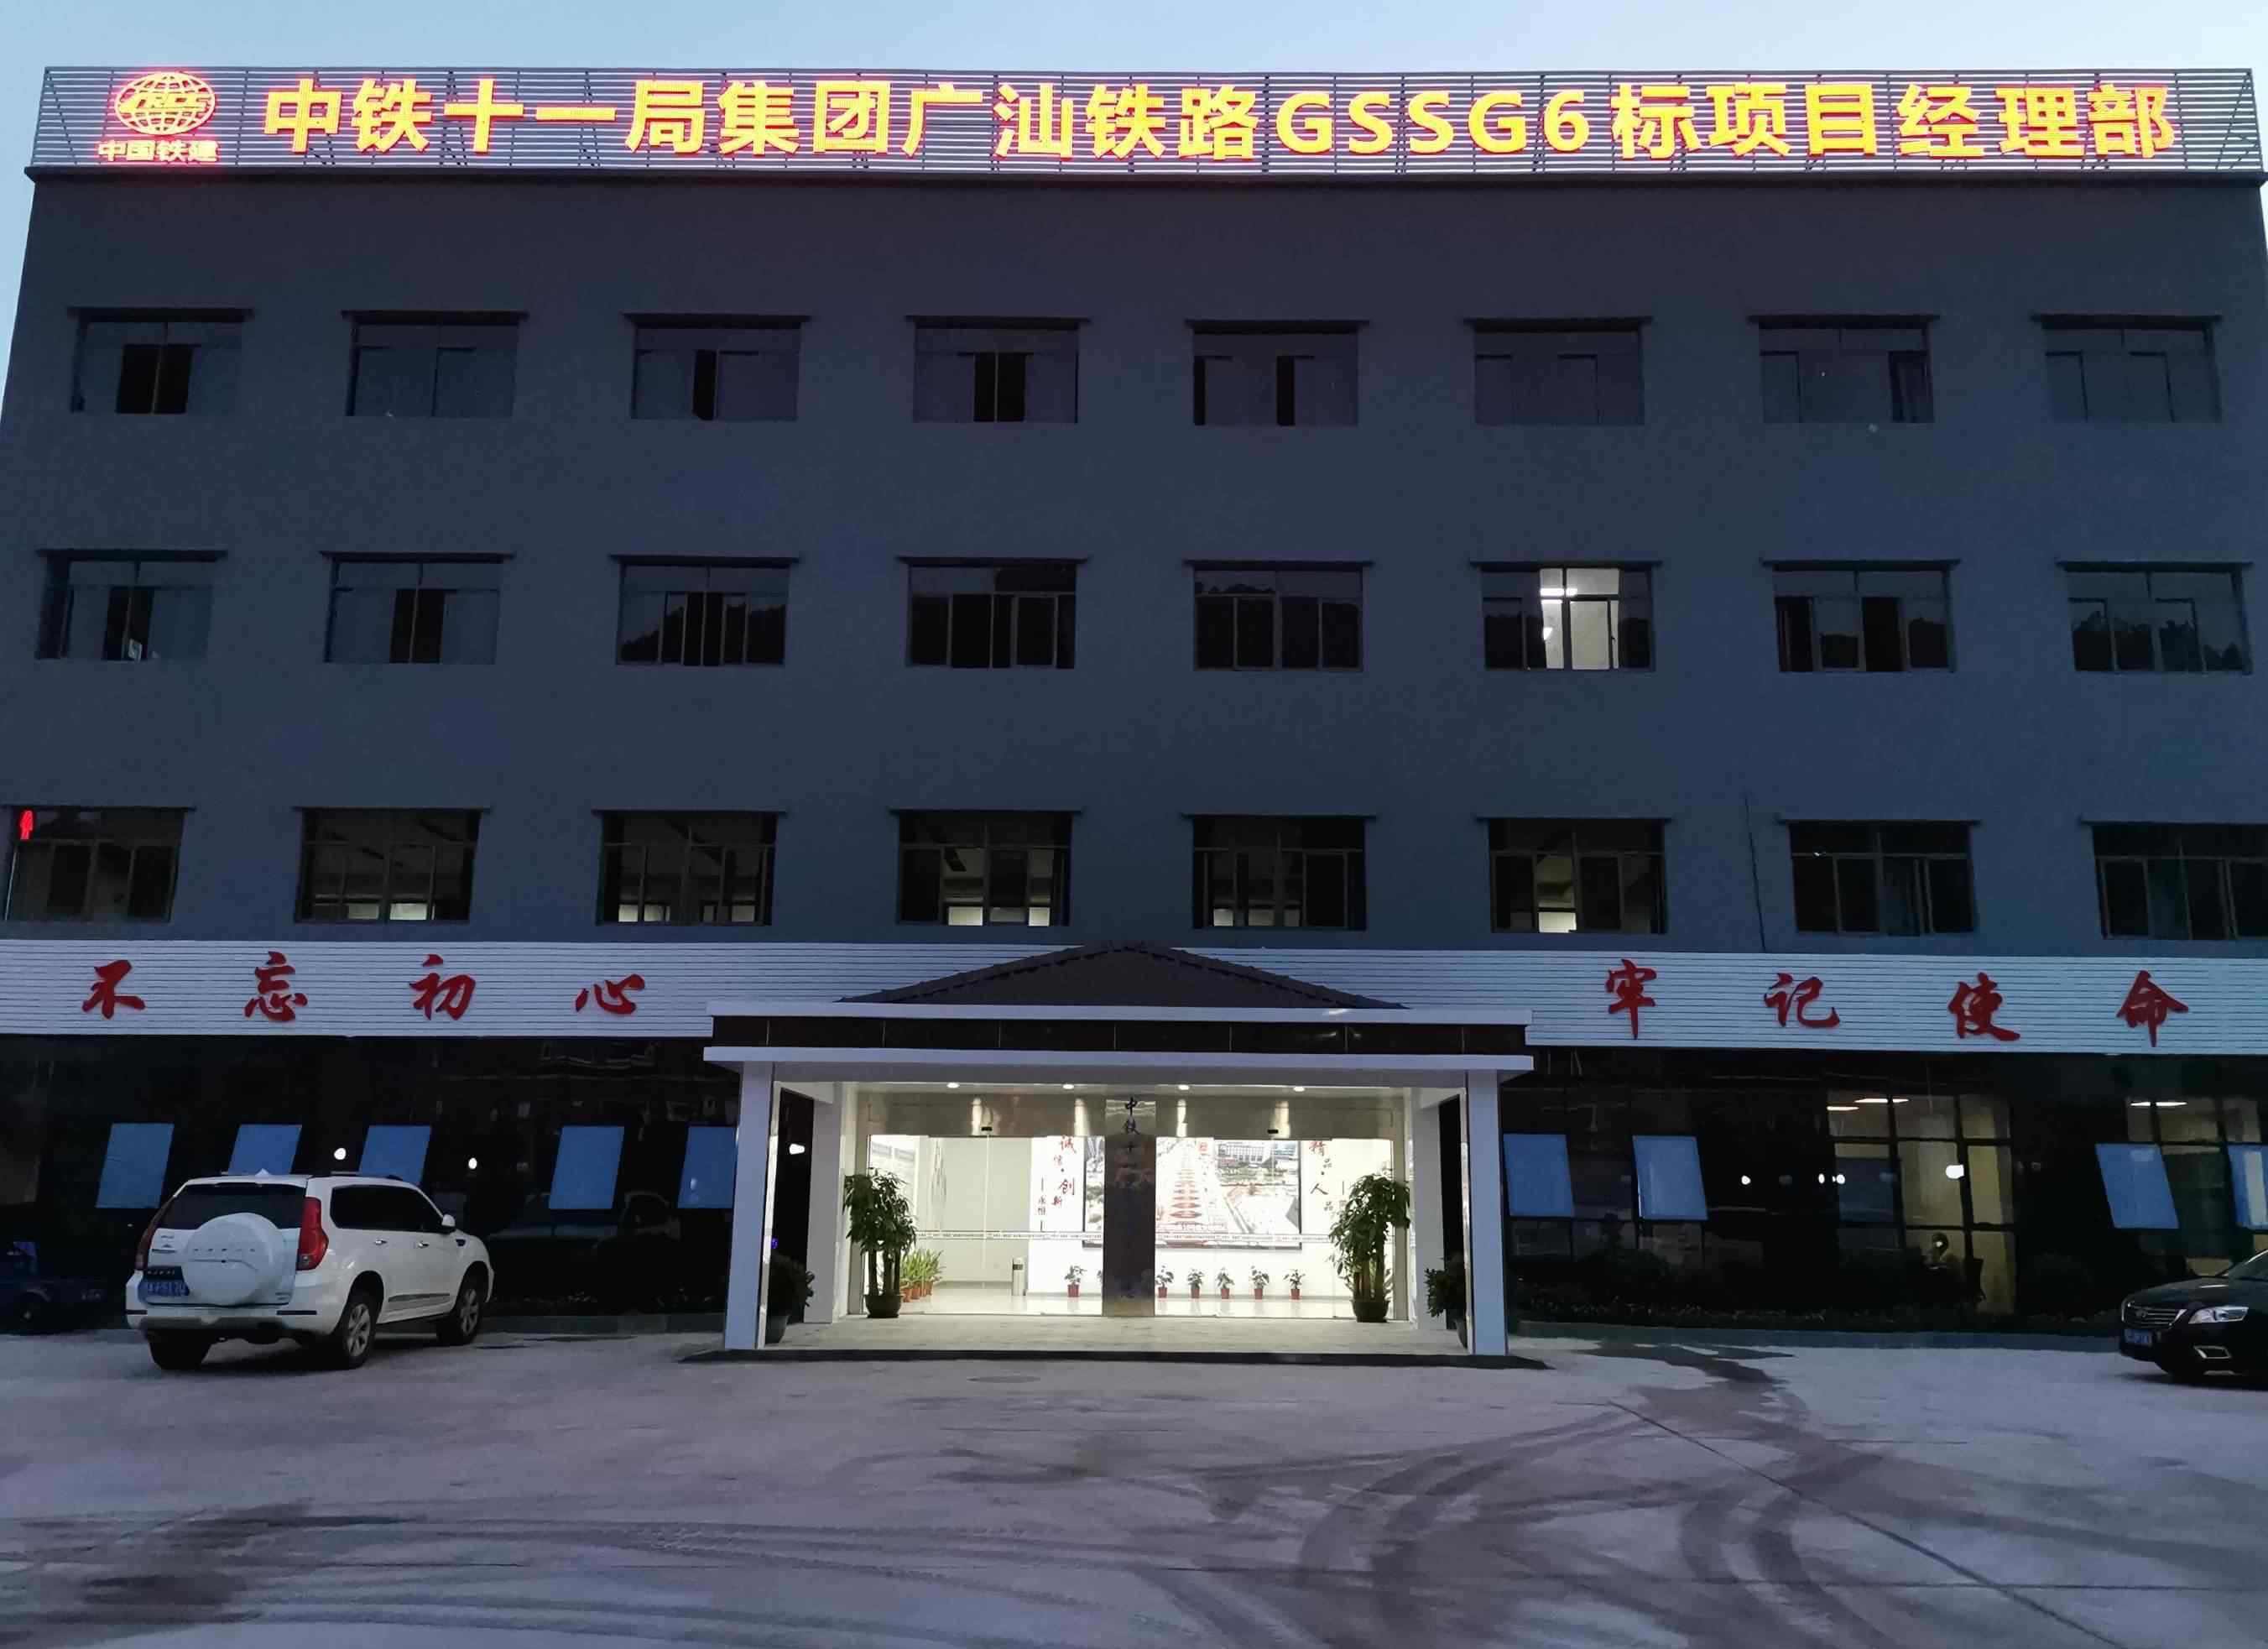 广汕铁路 “中铁十一局集团广汕铁路GSSG6标项目经理部”这是我最新的简历